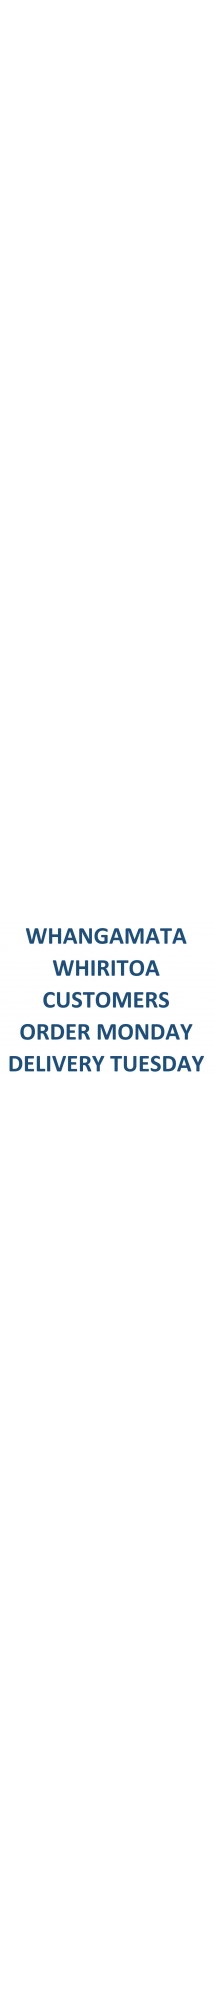 Whangamata Whiritoa Order Monday Delivery Tuesday